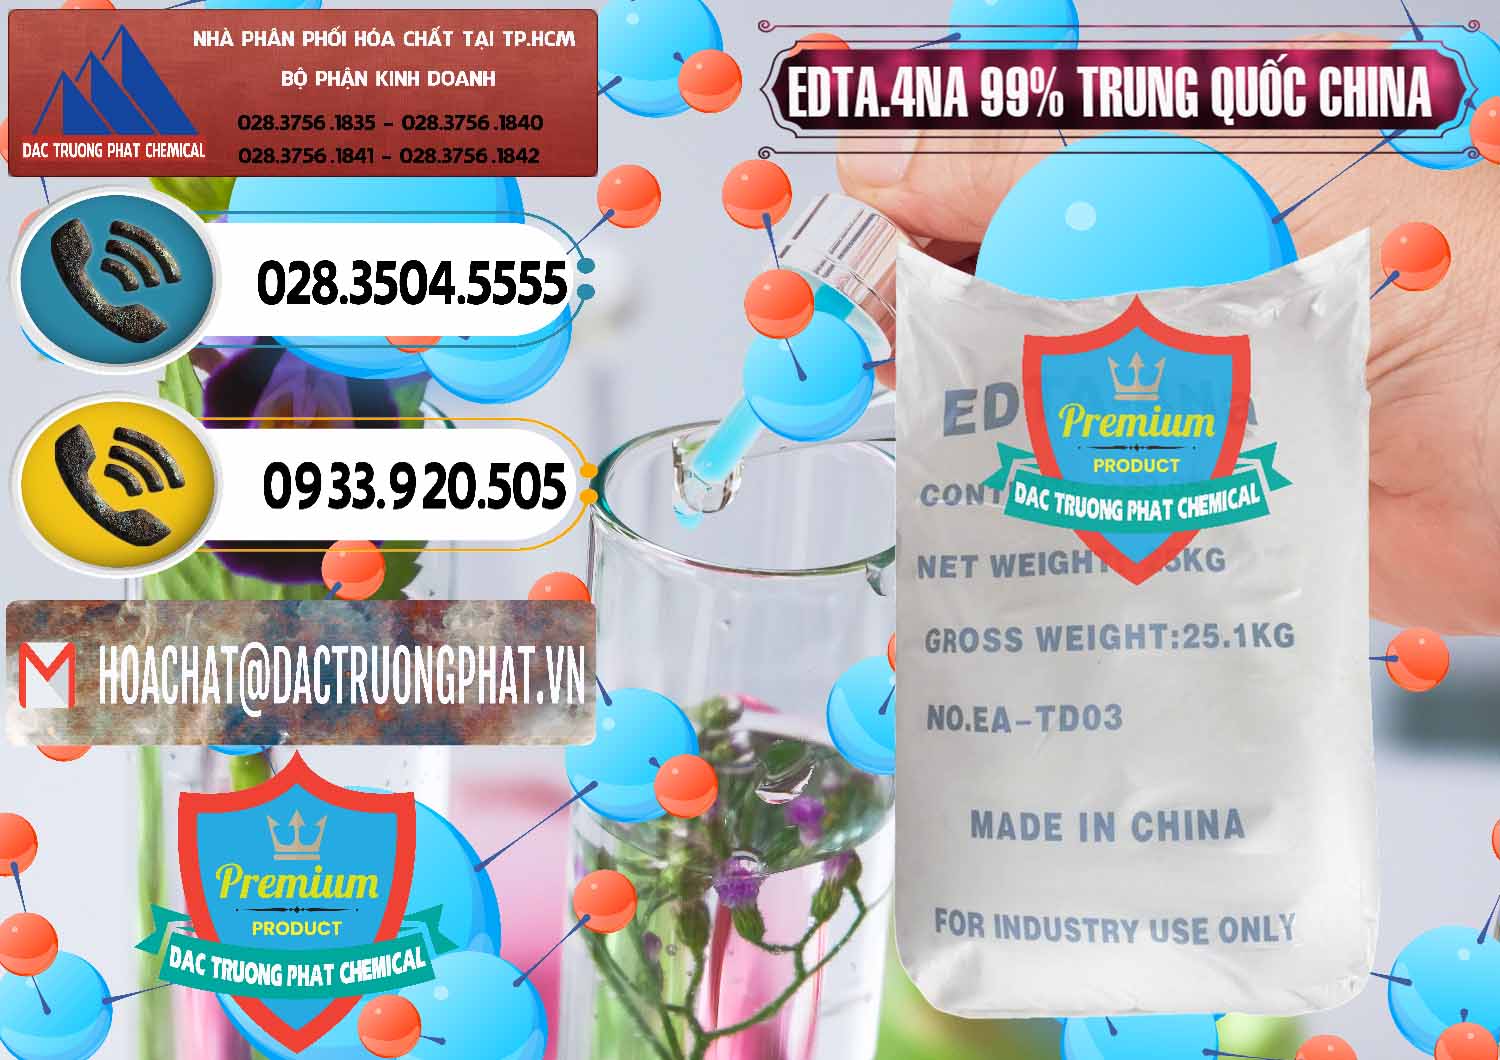 Công ty cung cấp và bán EDTA.4NA - EDTA Muối 99% Trung Quốc China - 0292 - Đơn vị cung cấp & kinh doanh hóa chất tại TP.HCM - hoachatdetnhuom.vn